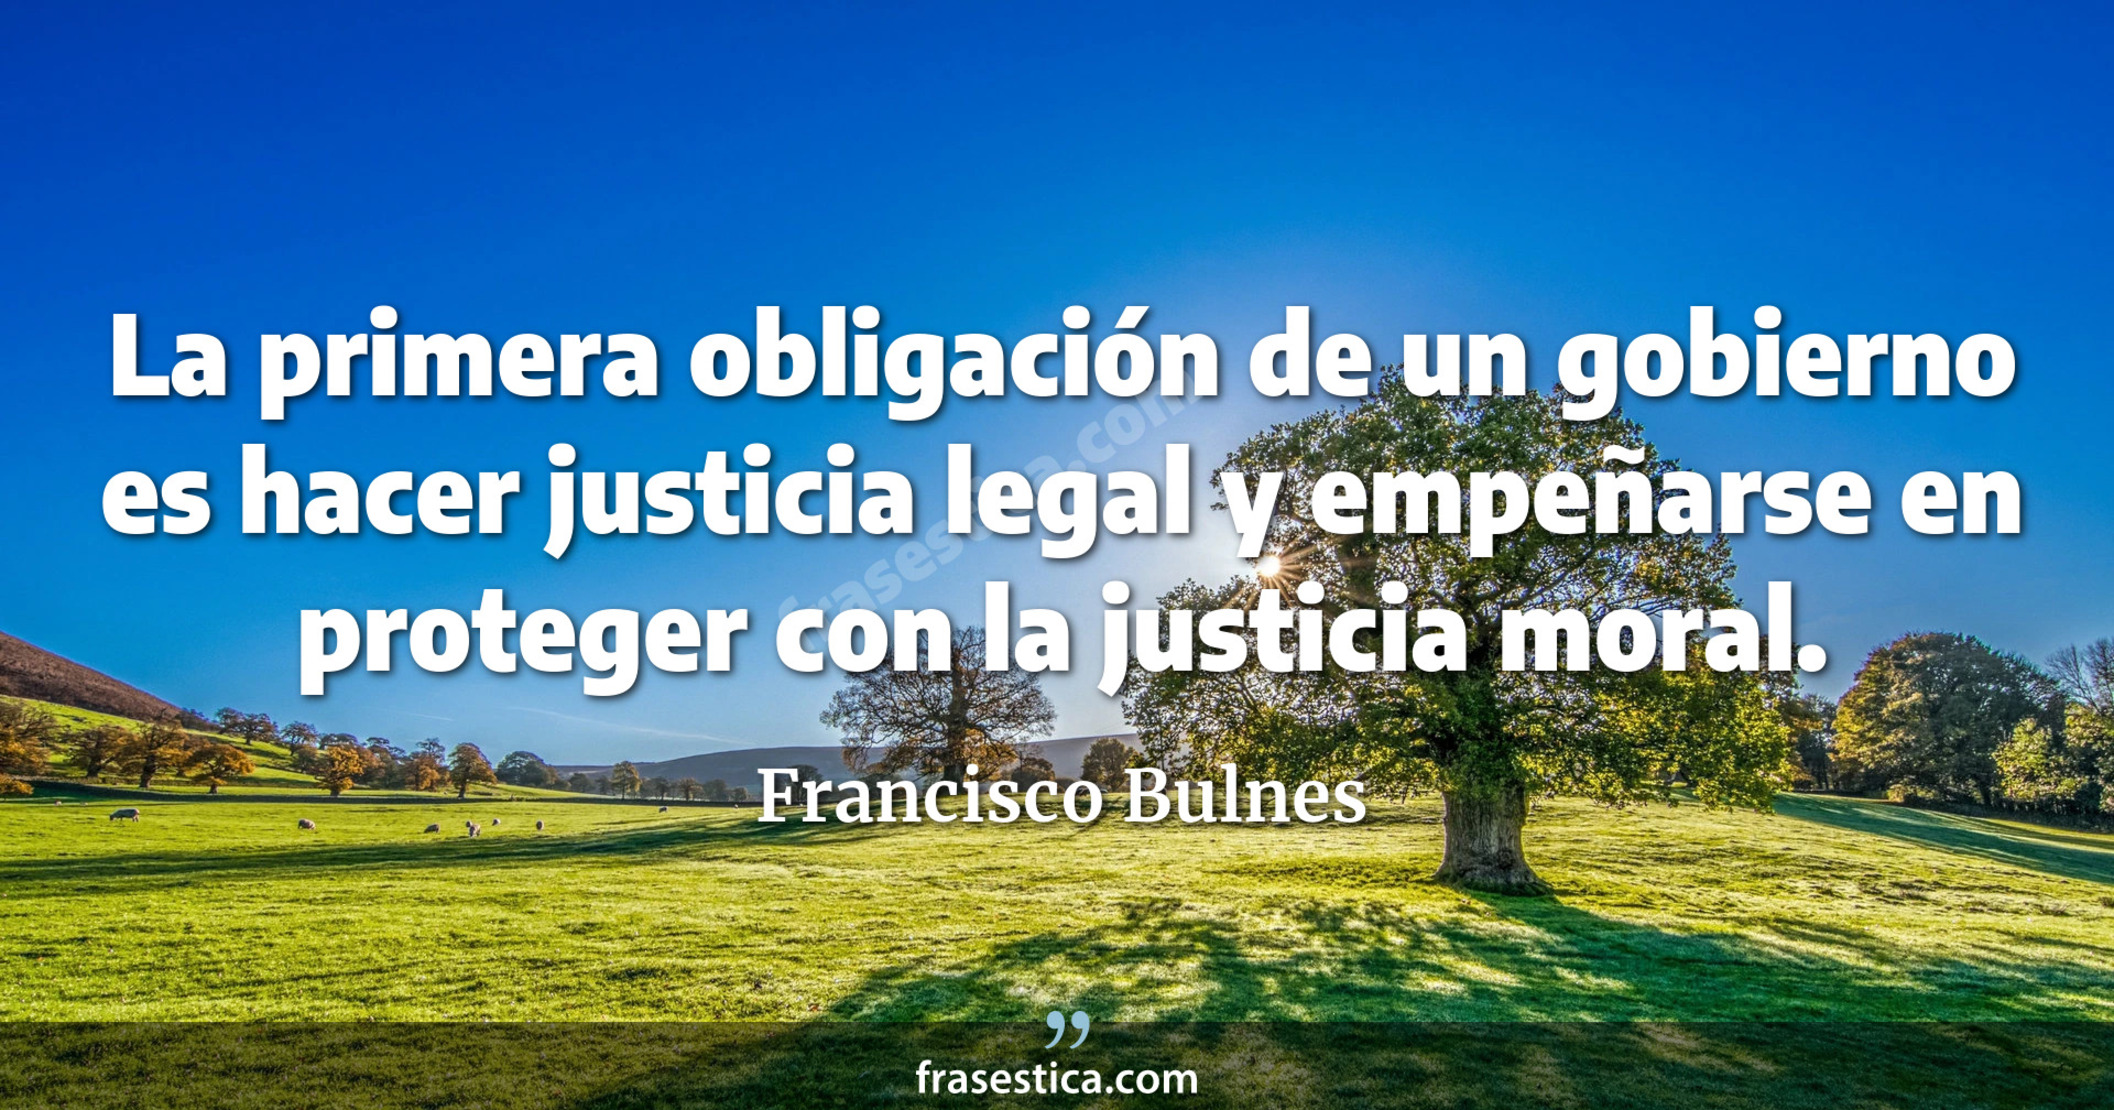 La primera obligación de un gobierno es hacer justicia legal y empeñarse en proteger con la justicia moral. - Francisco Bulnes